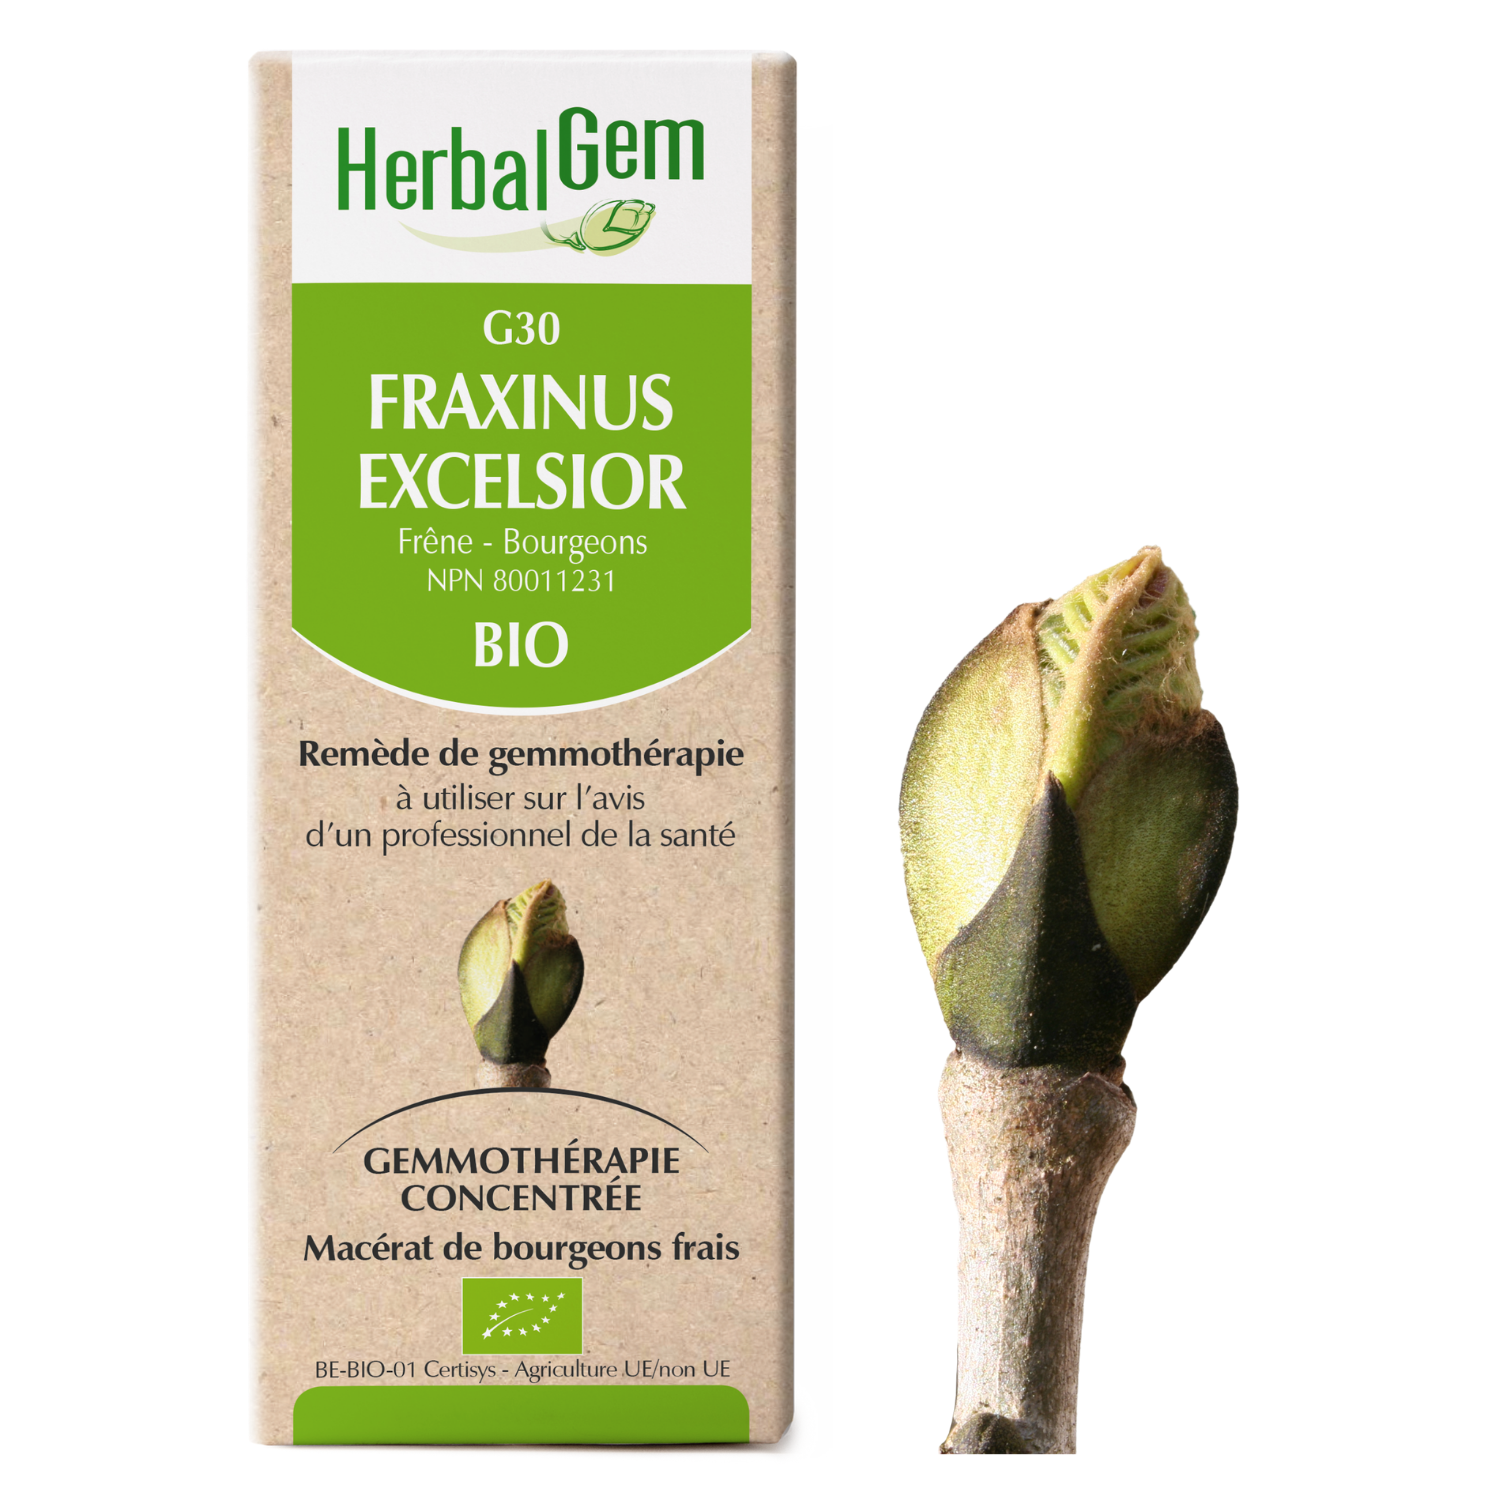 Fraxinus excelsior (Ash) G30